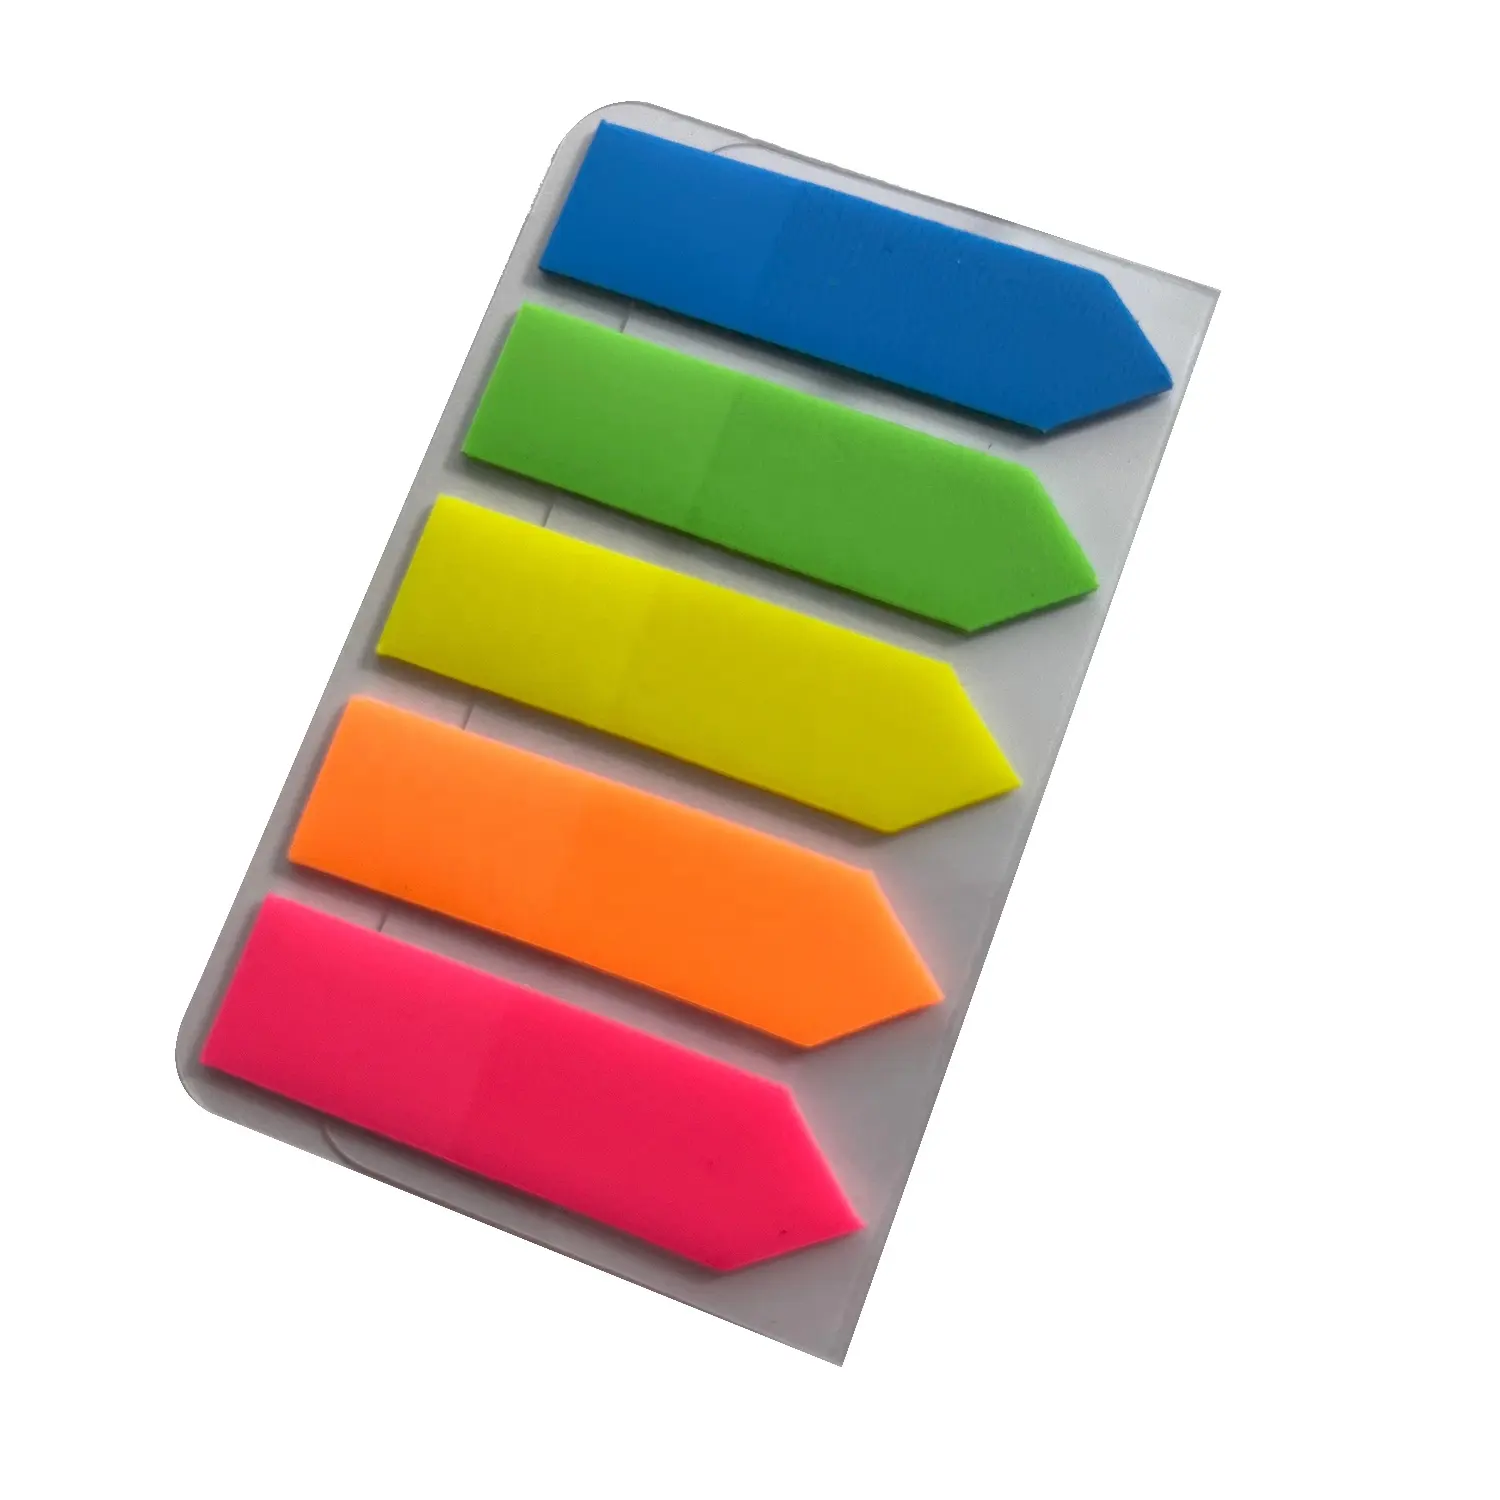 Divertido autoadhesivo 5 colores notas adhesivas baratas transparente al por mayor de plástico PET Oficina escritura blocs de notas